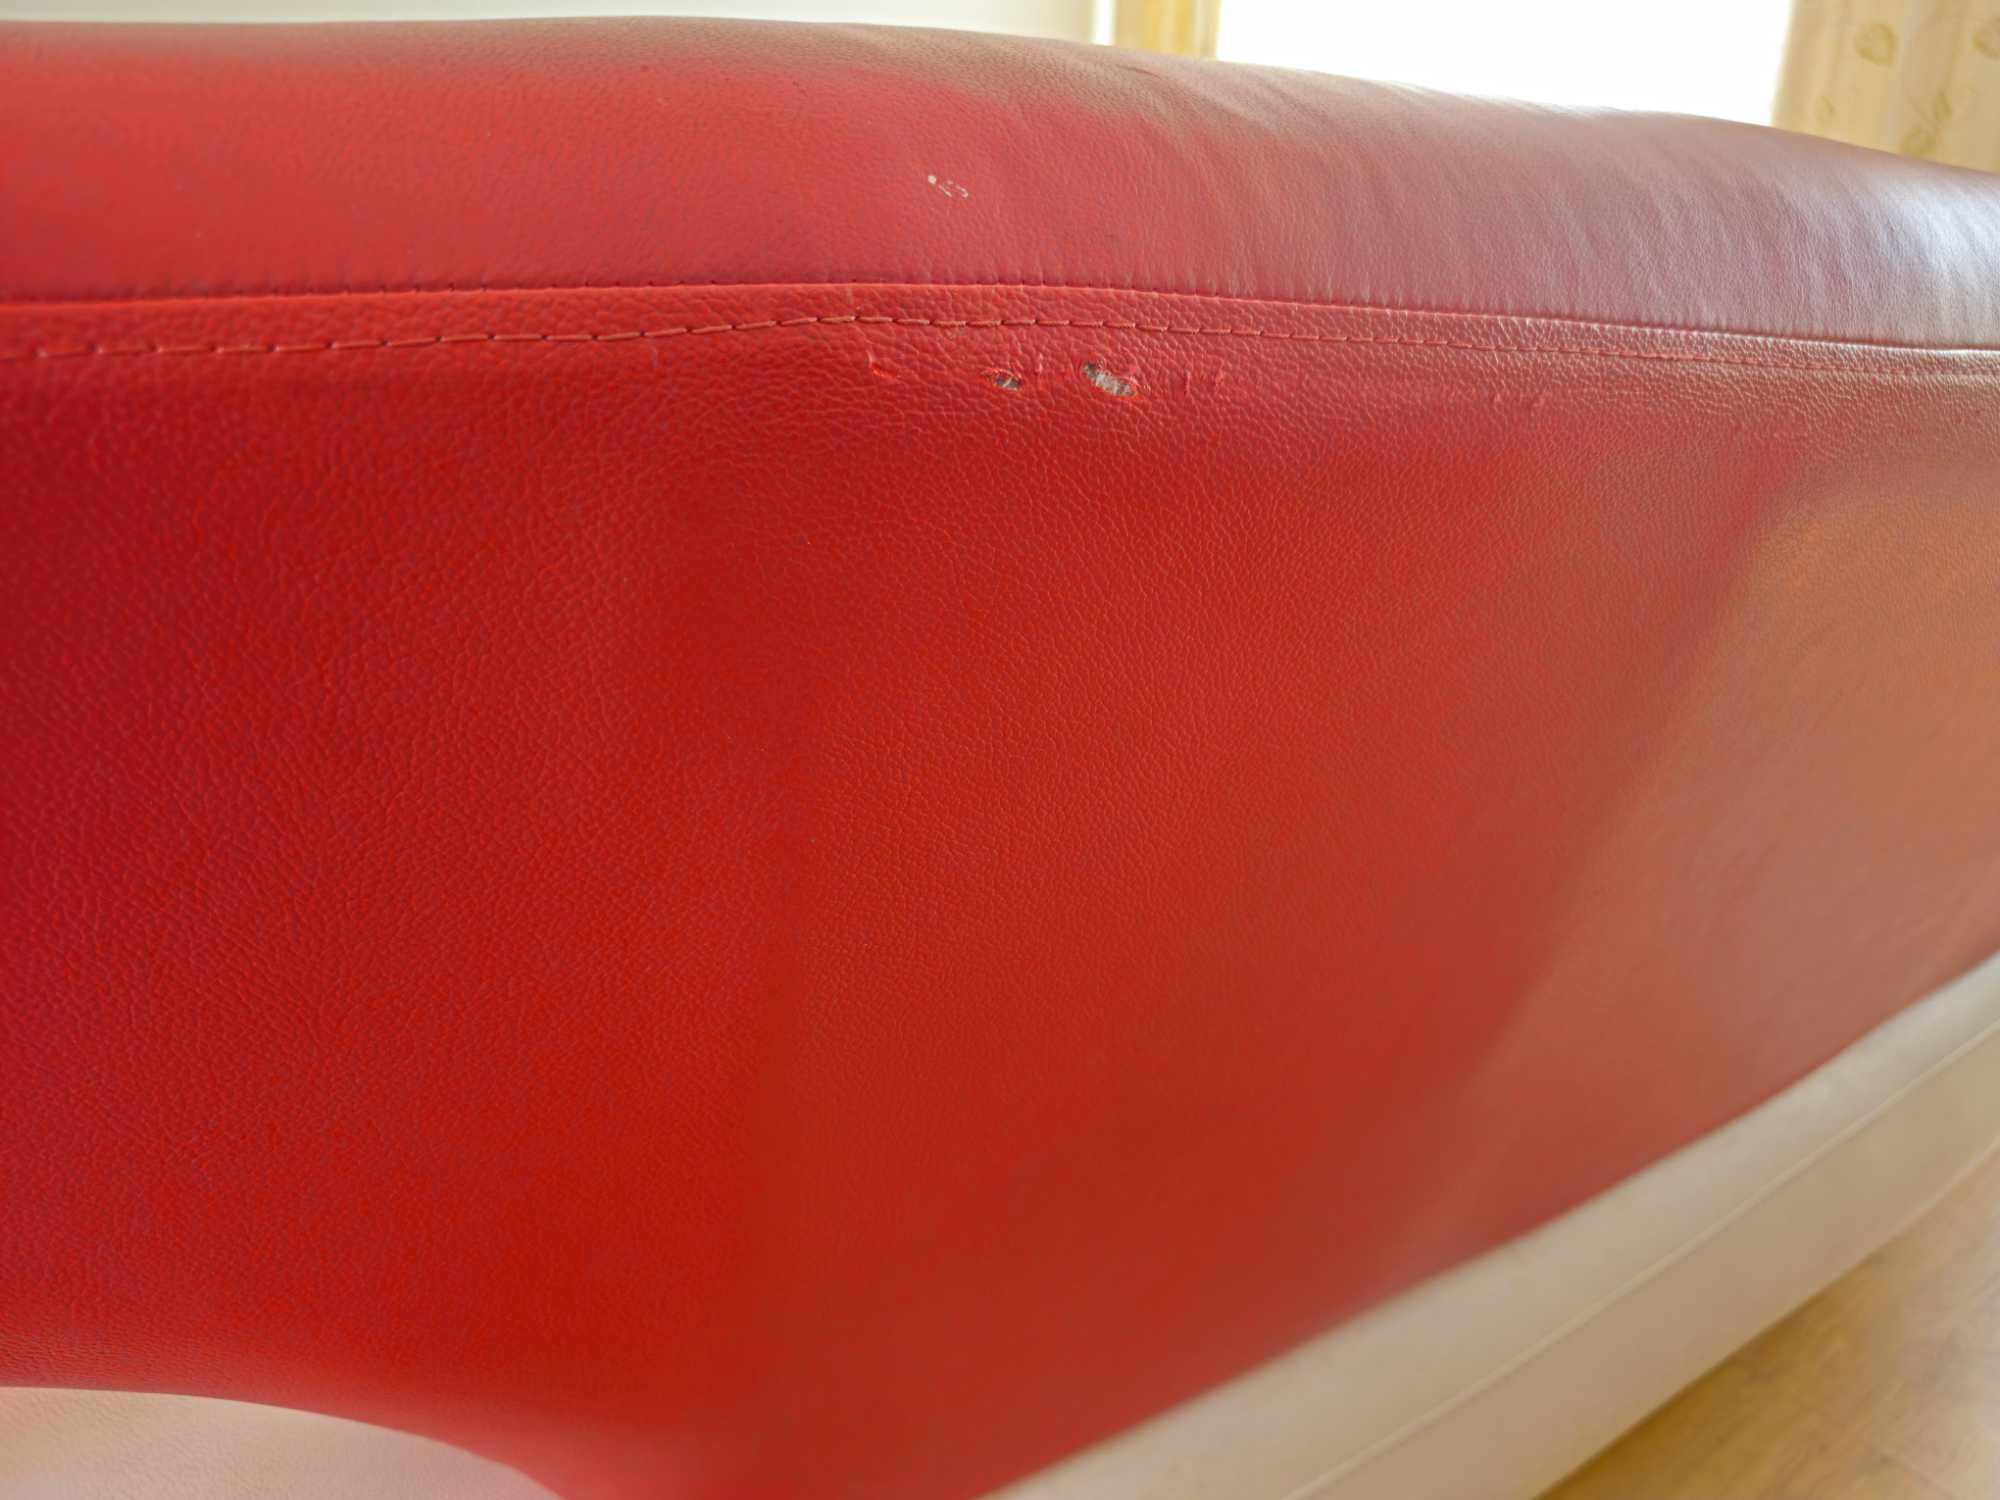 Komplet wypoczynkowy kanapa sofa fotel skórzana designerska nowoczesna